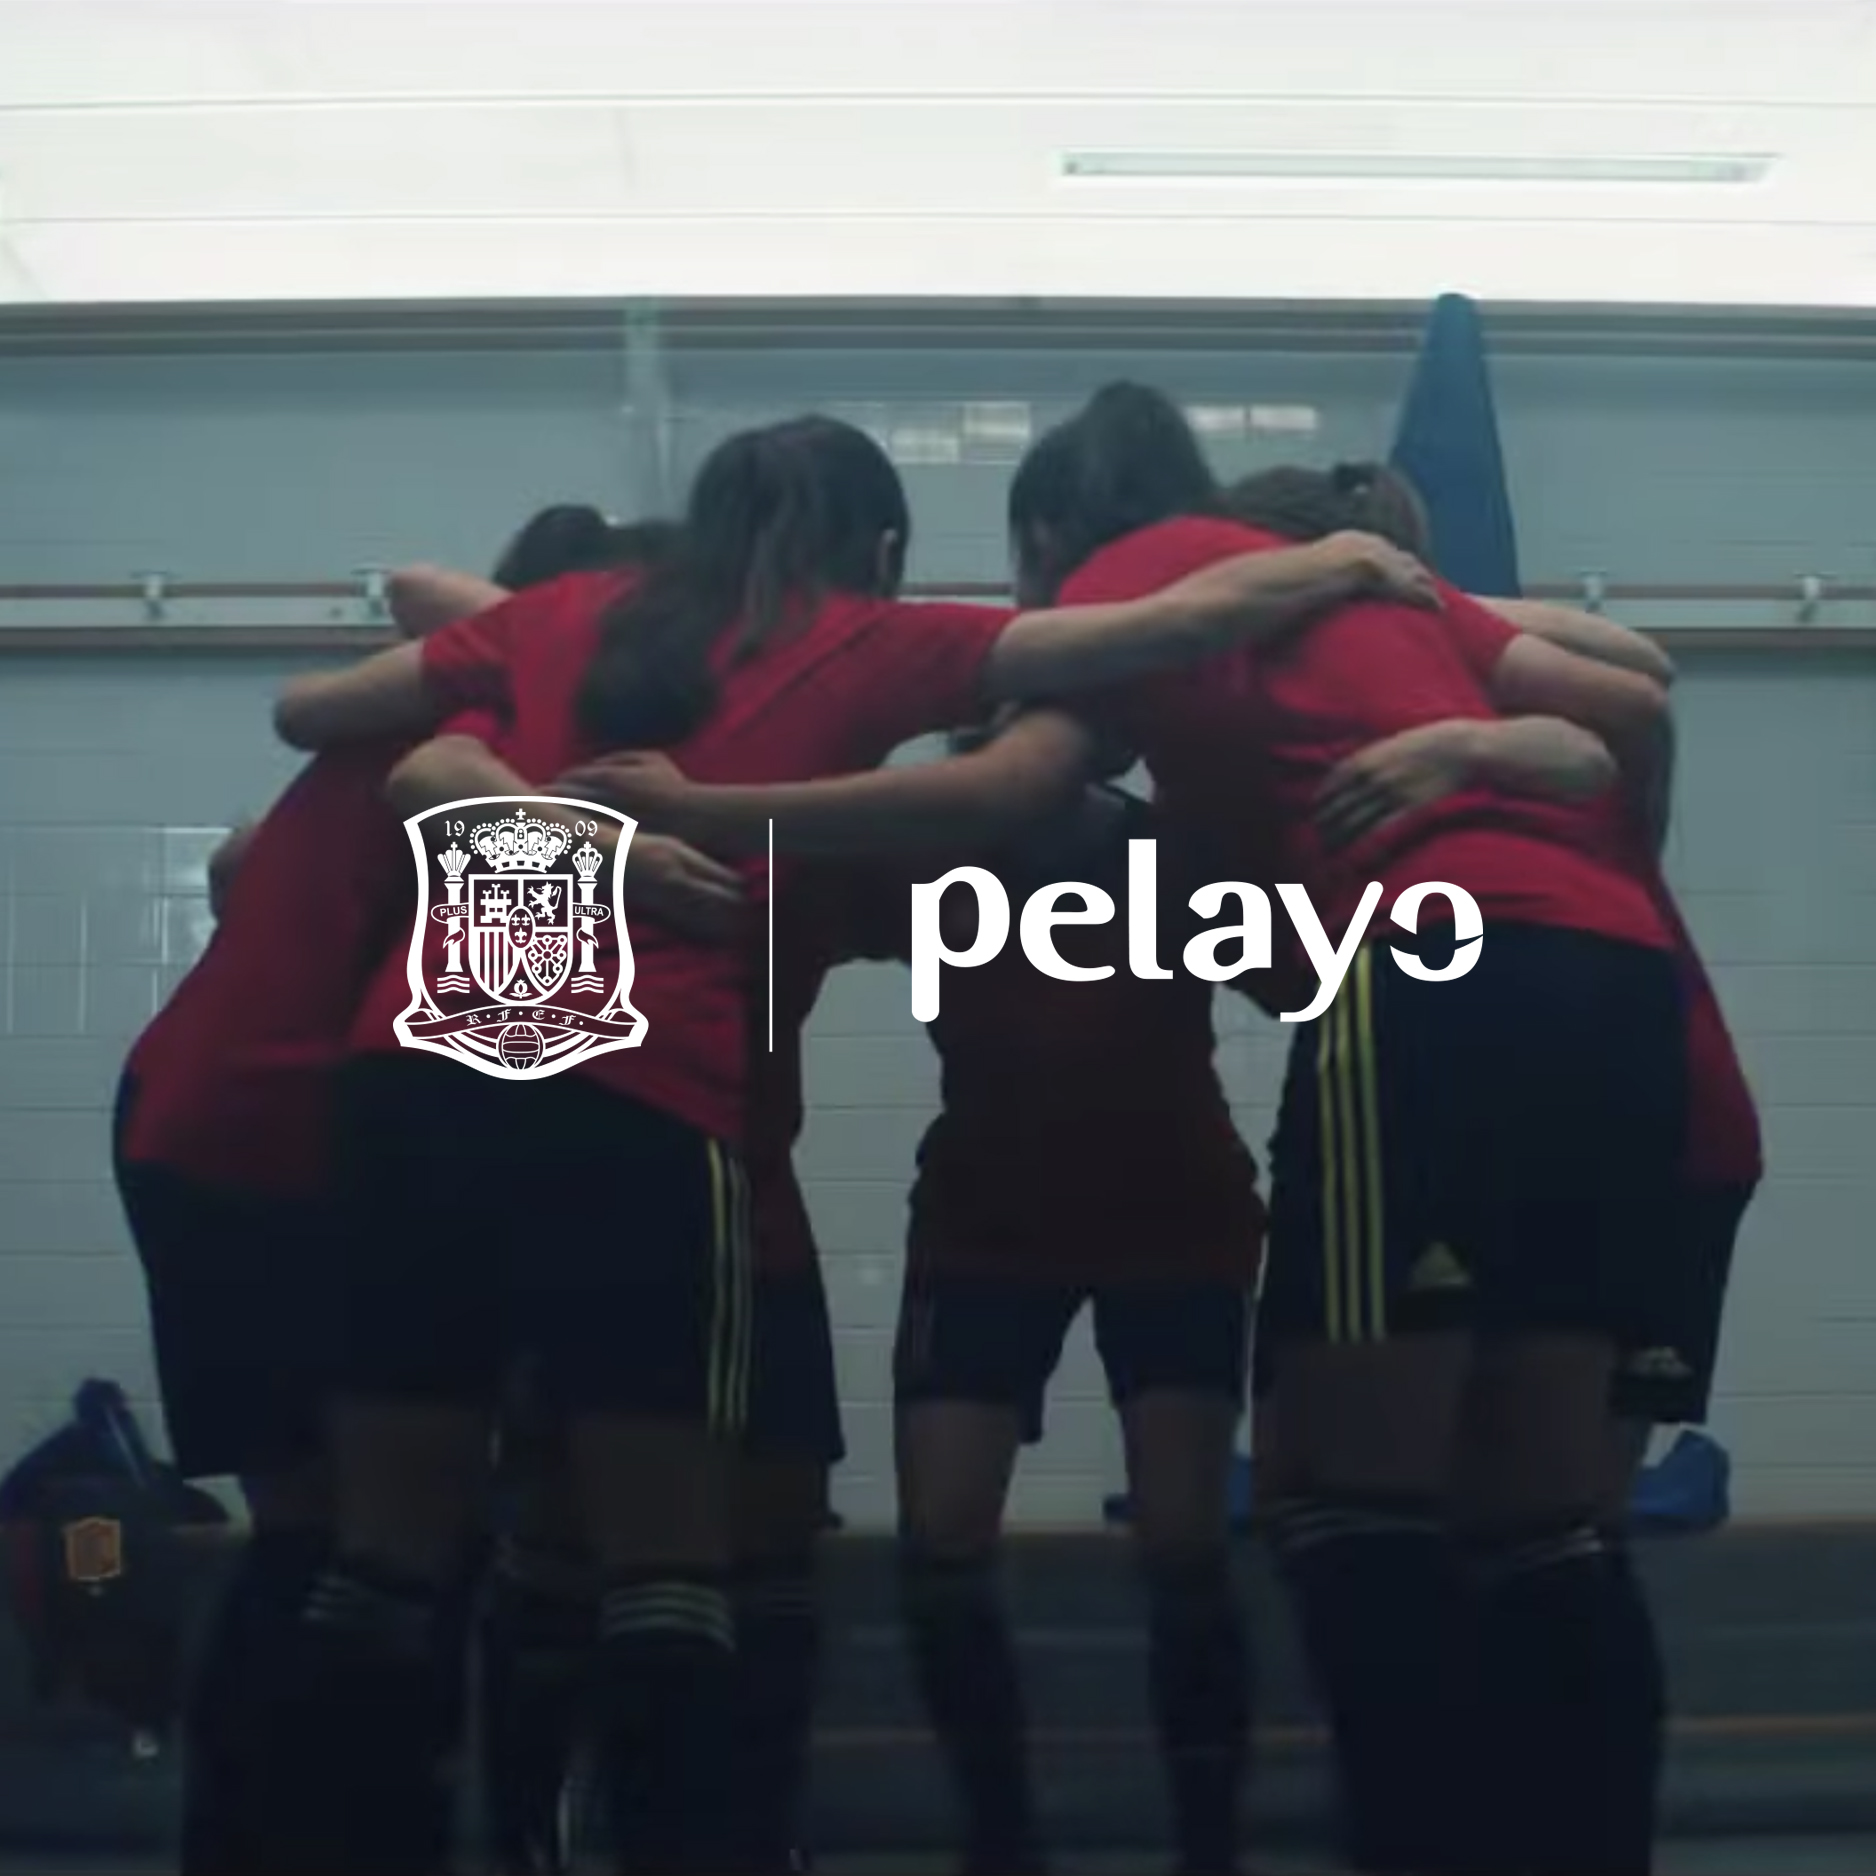 Jugadoras de la Selección Femenina de Fútbol conjurándose abrazadas antes de un partido. En sobreimpresión el logo de Pelayo y el escudo de la selección